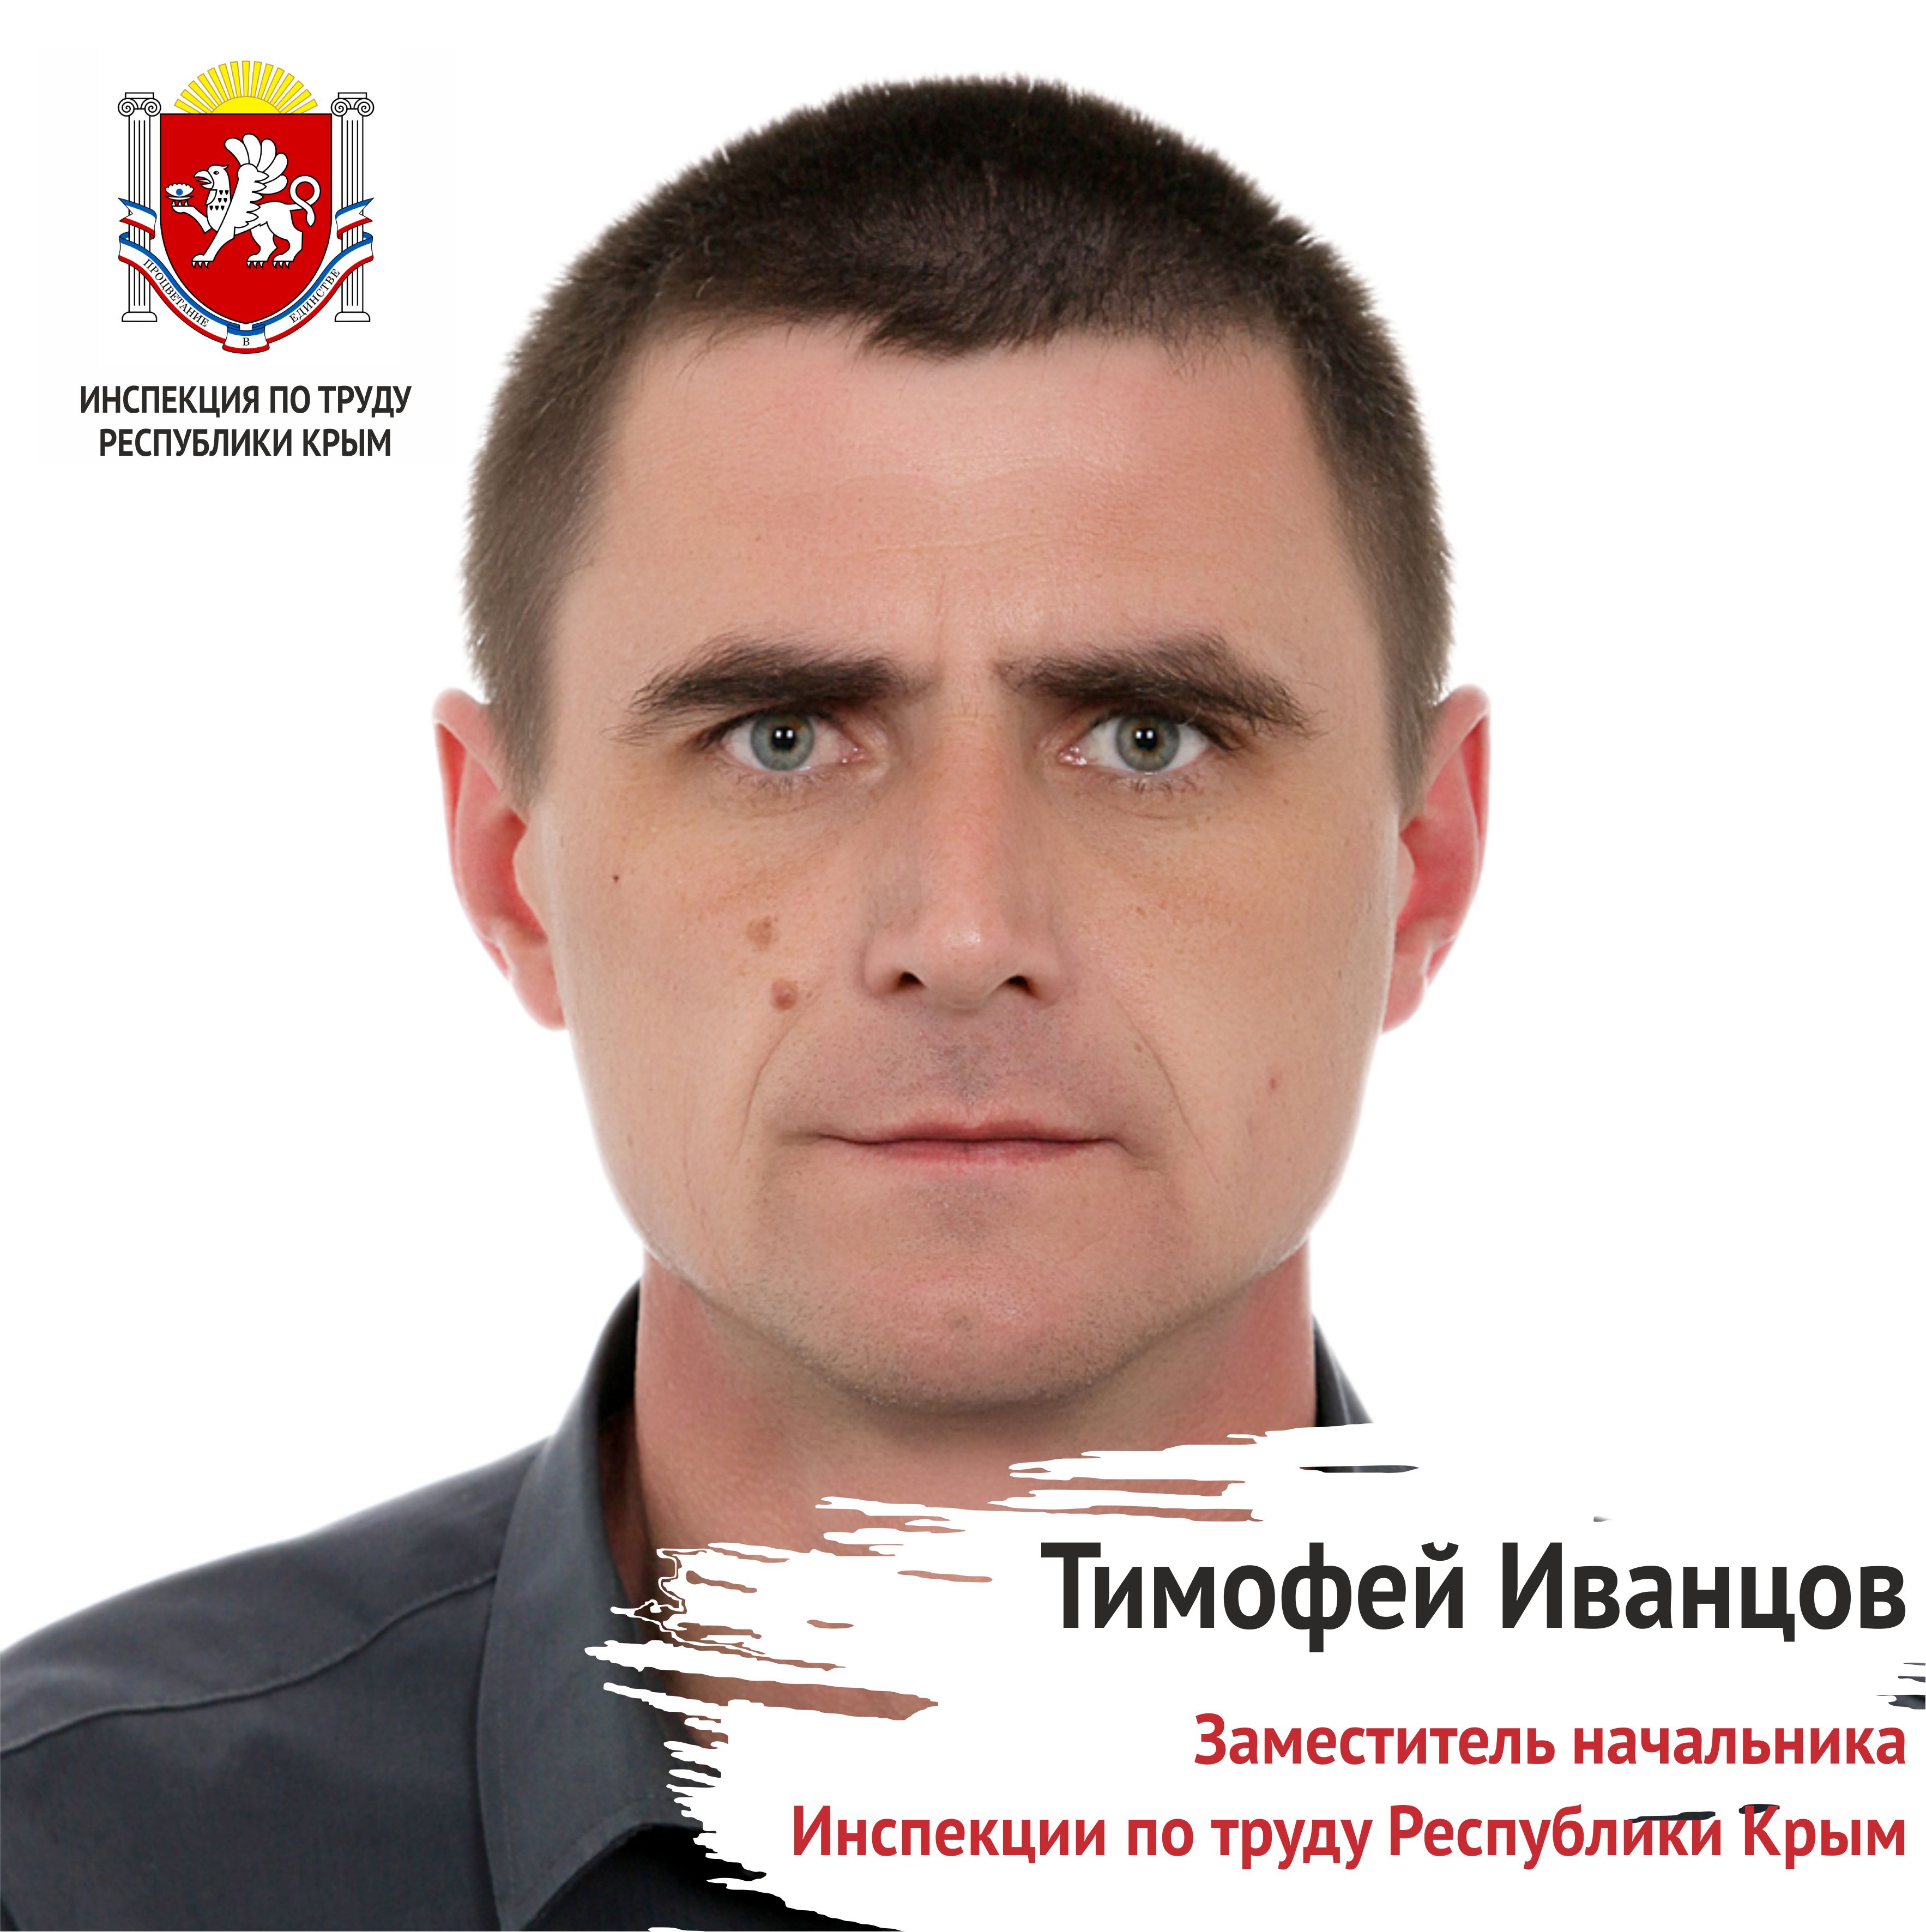 Тимофей Иванцов